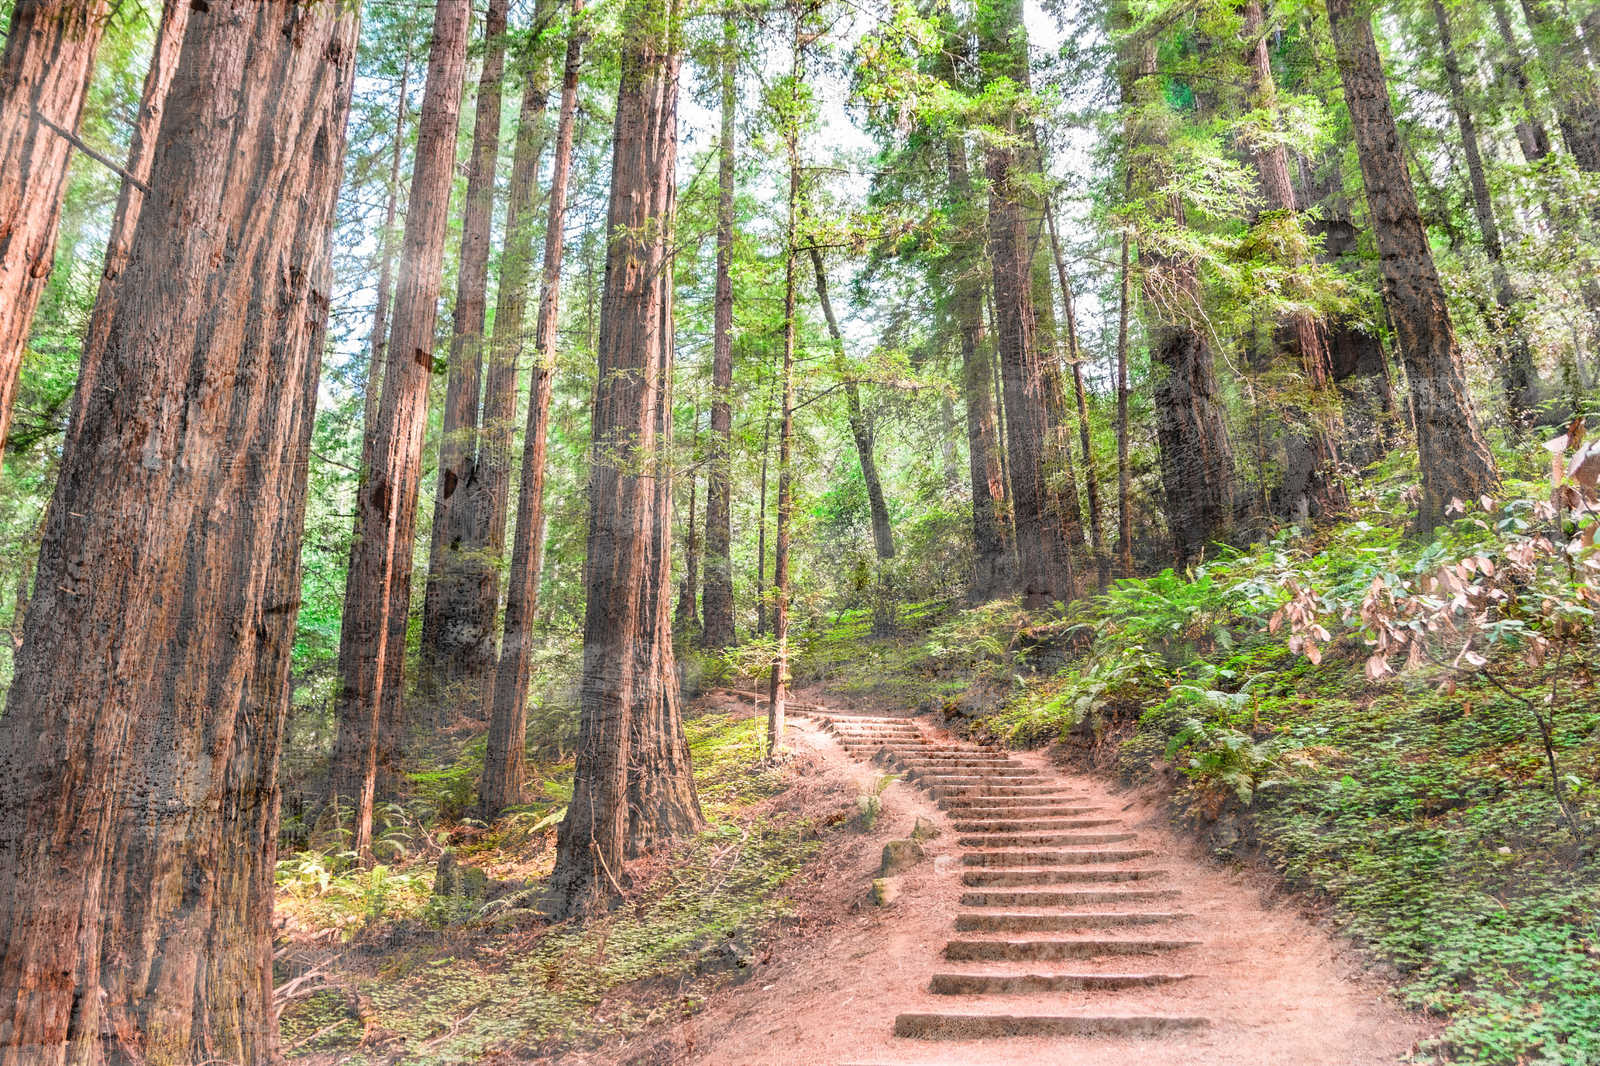             Leinwand mit Holztreppe durch den Wald | braun, grün, blau – 0,90 m x 0,60 m
        